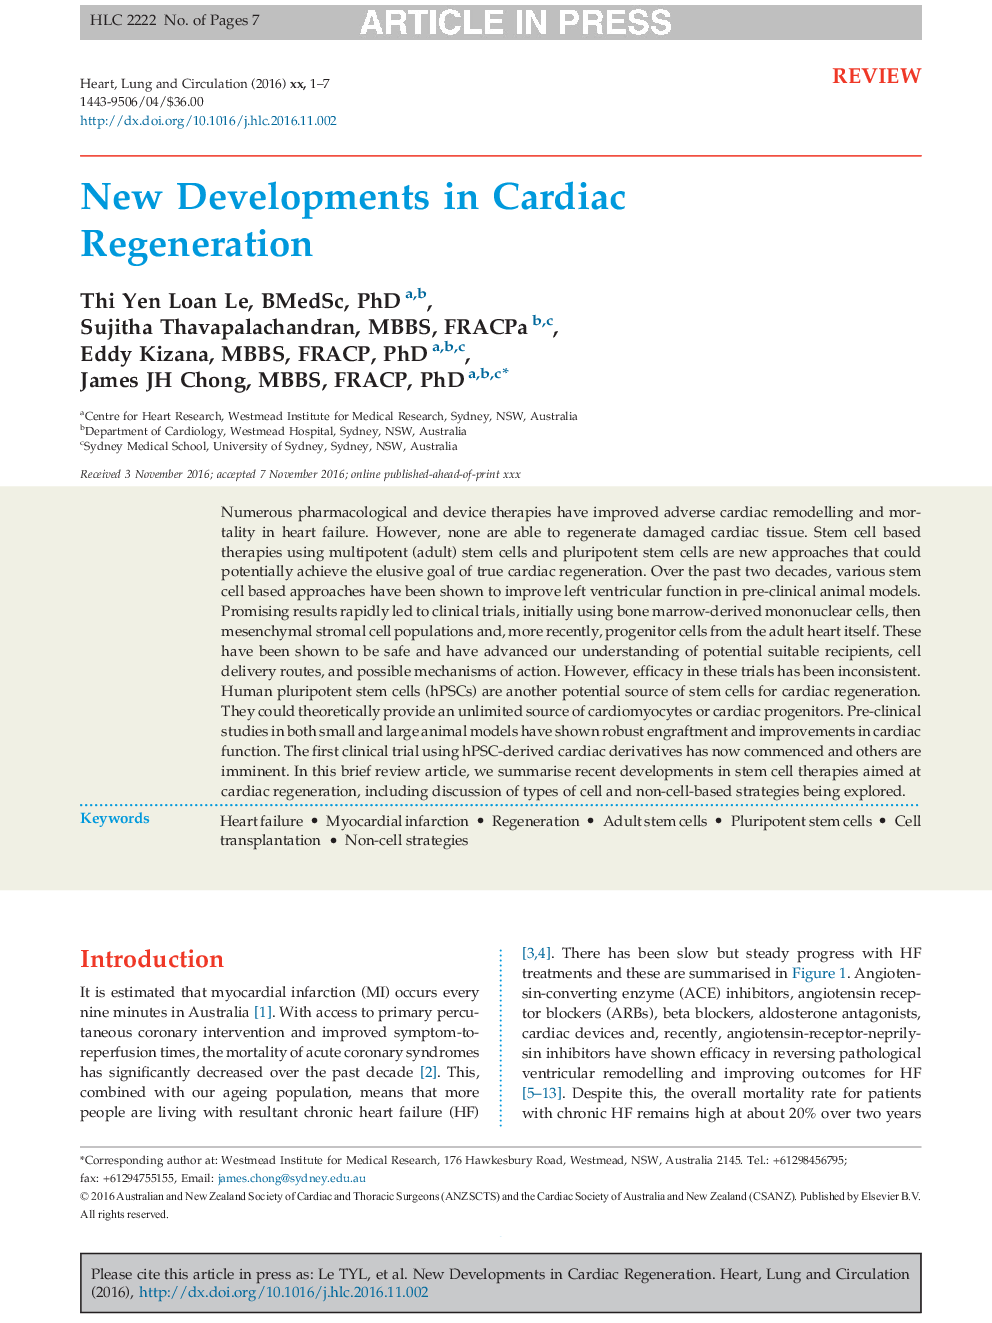 New Developments in Cardiac Regeneration